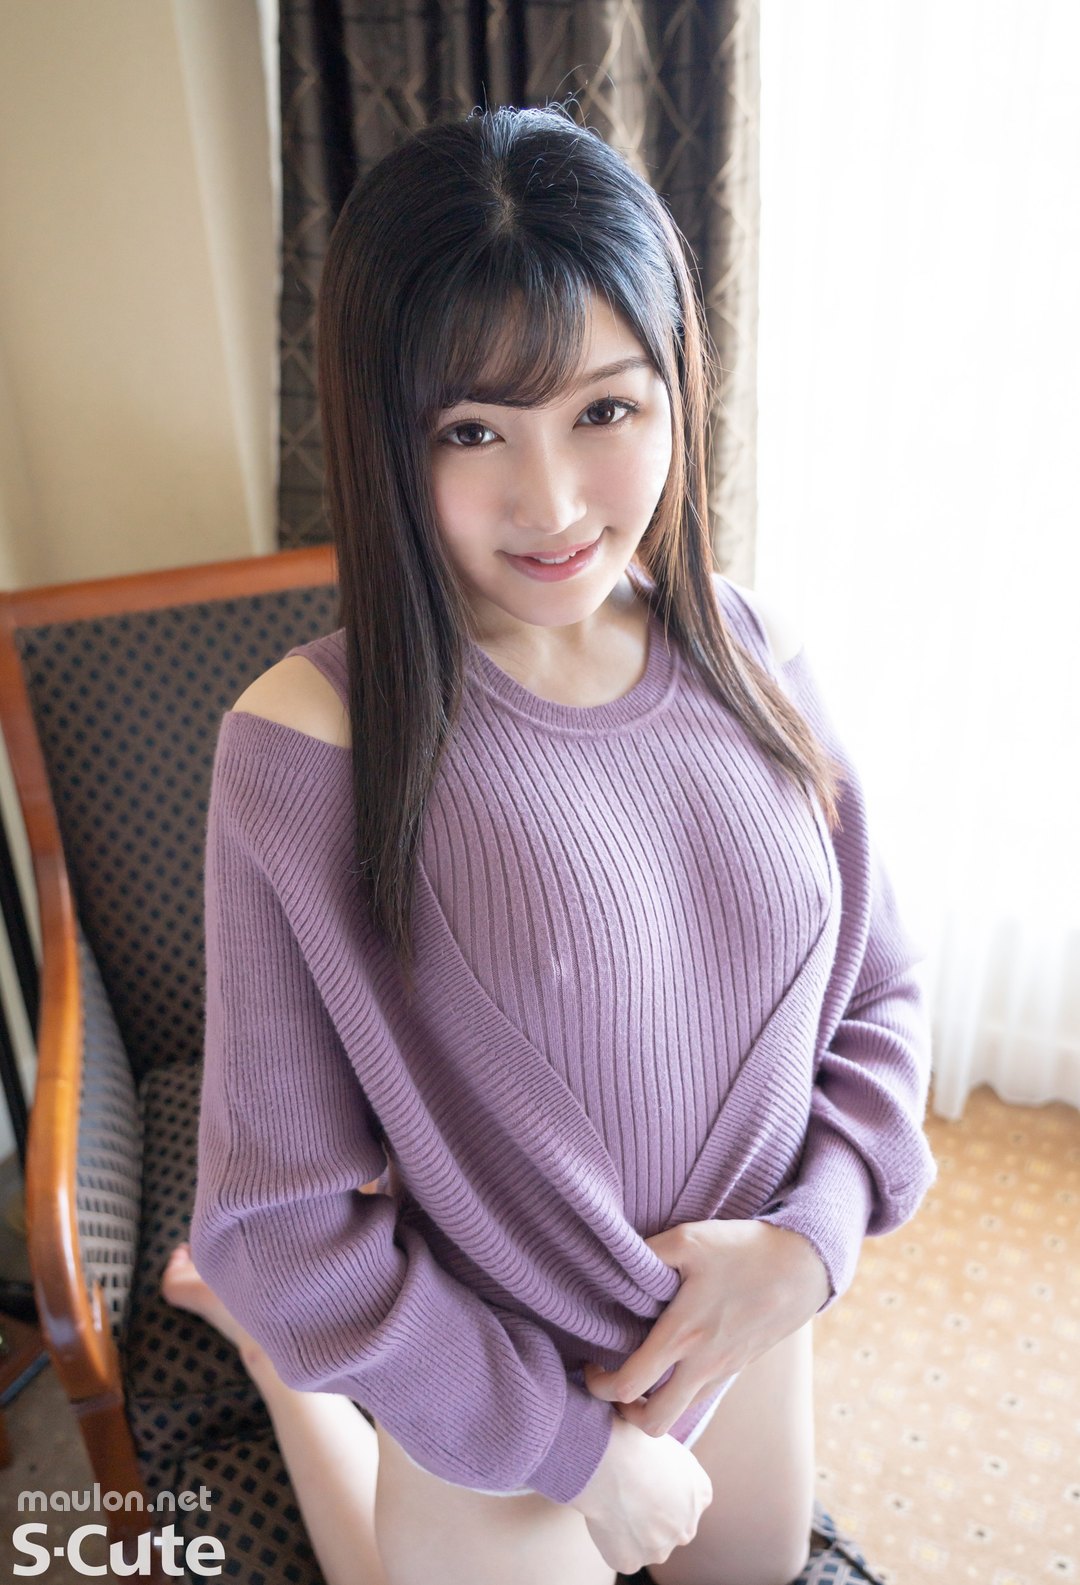 MauLon.Net - Ảnh sex jav idol Nhật Bản - Takeda Erena